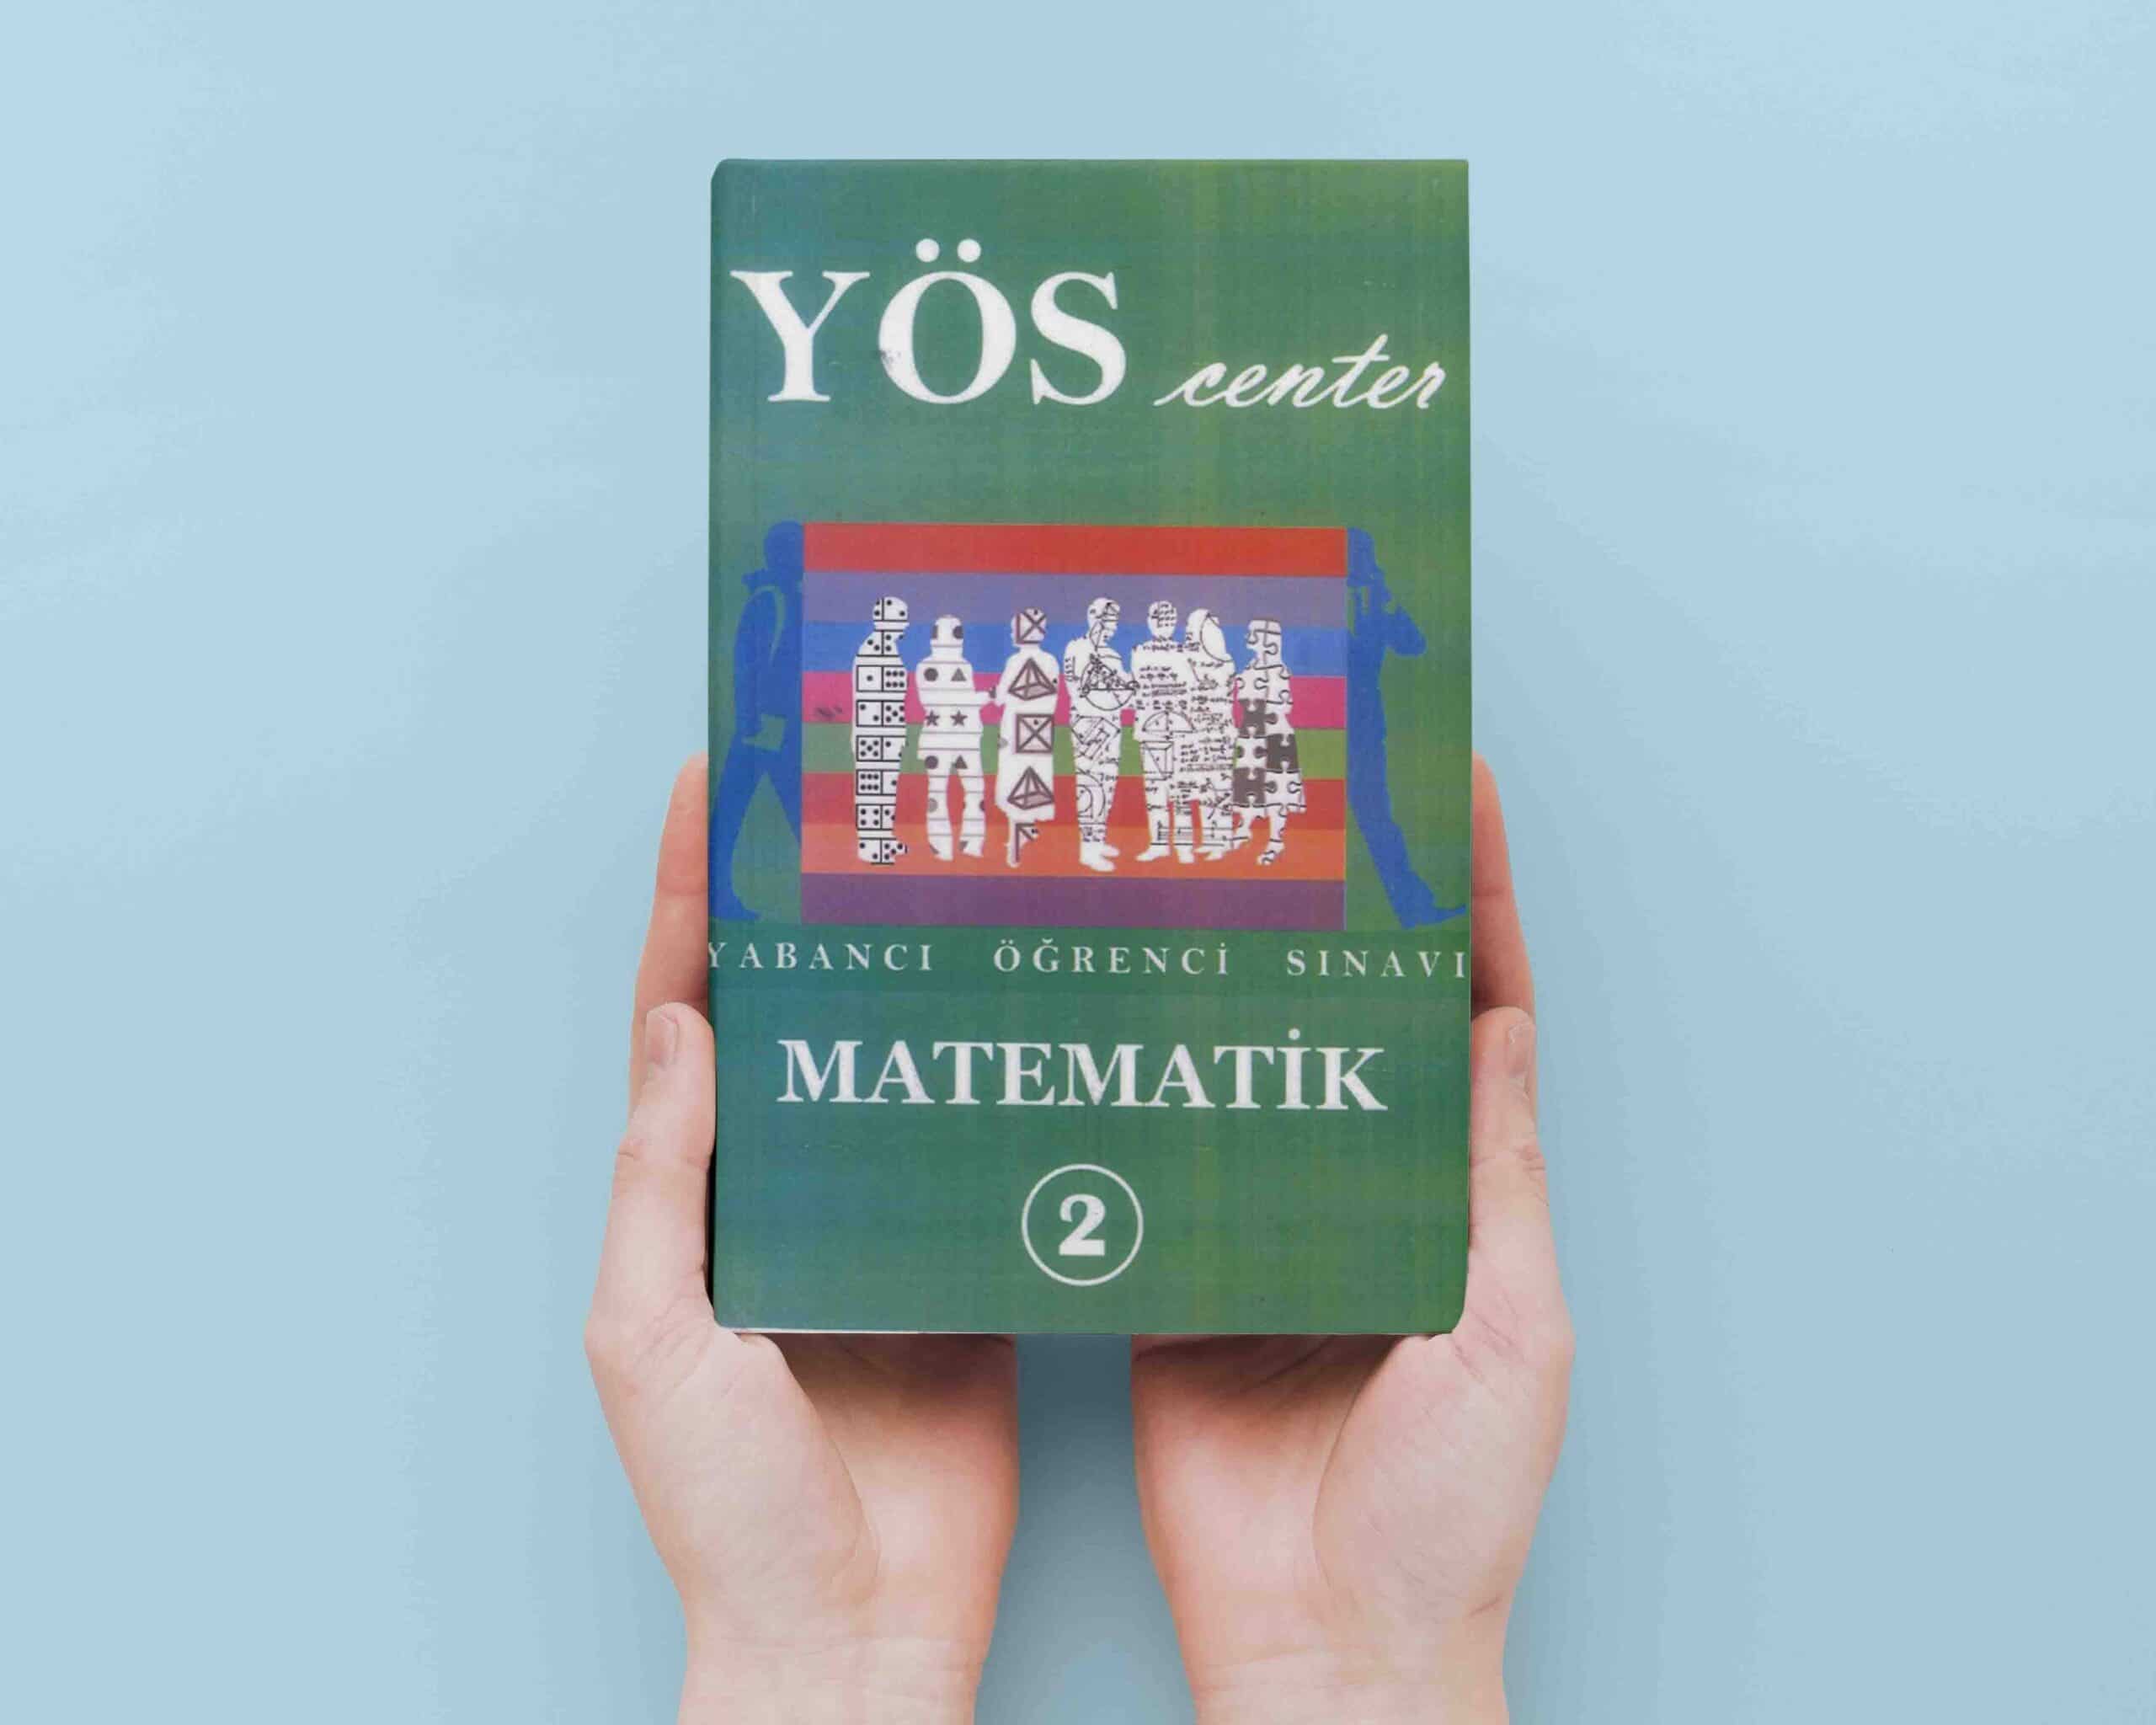 کتاب ریاضی 2 یوس سنتر